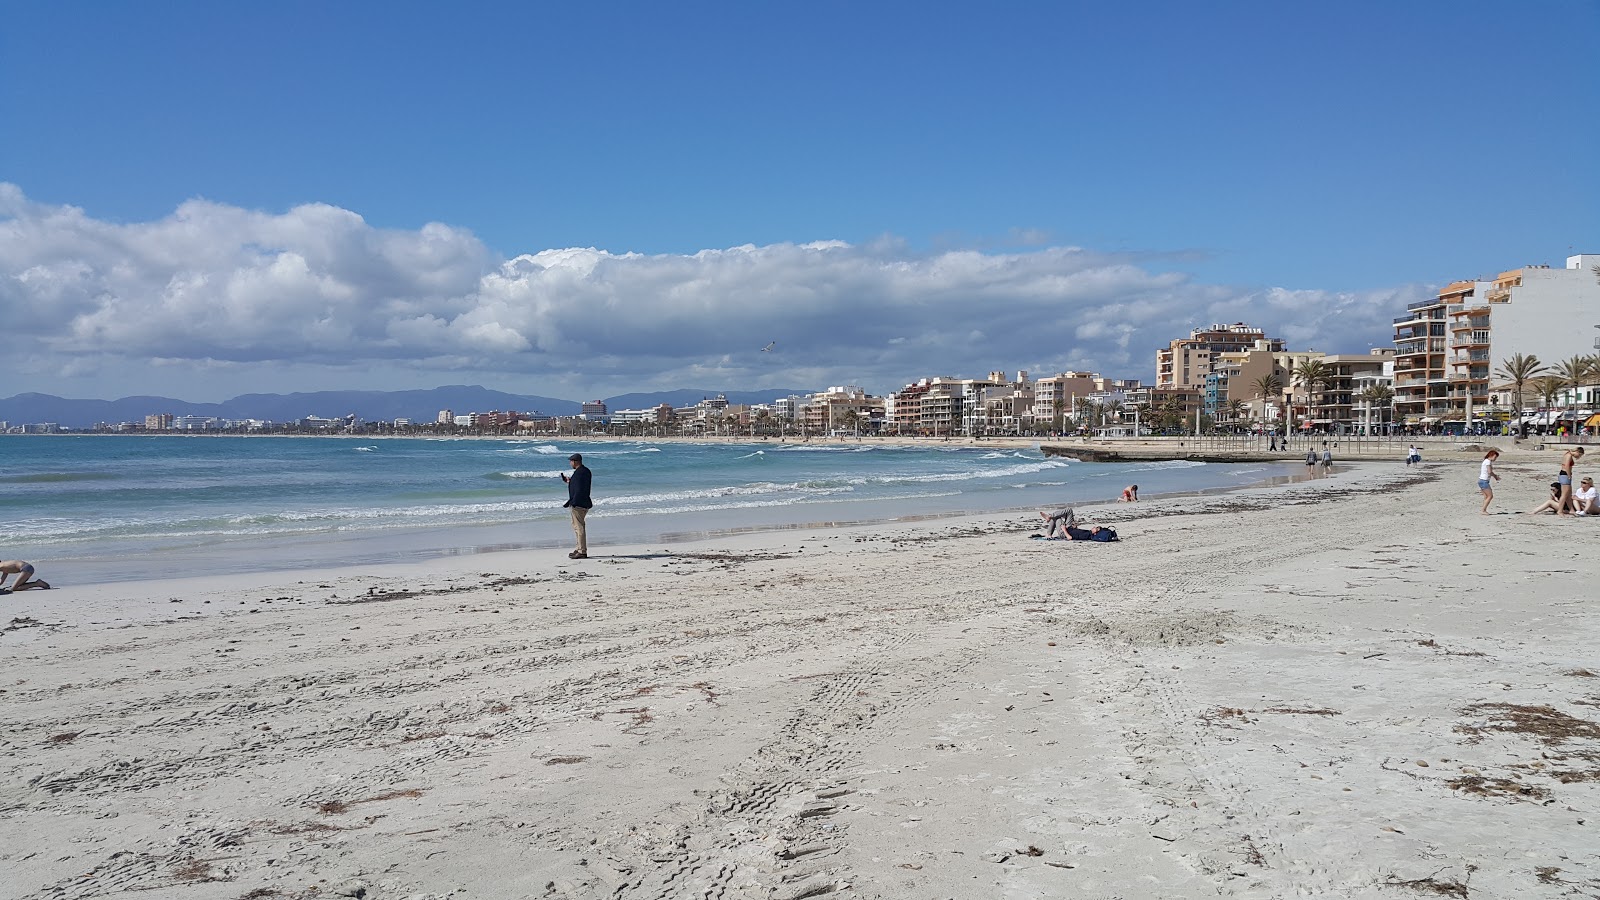 Foto af Playa de Palma - populært sted blandt afslapningskendere